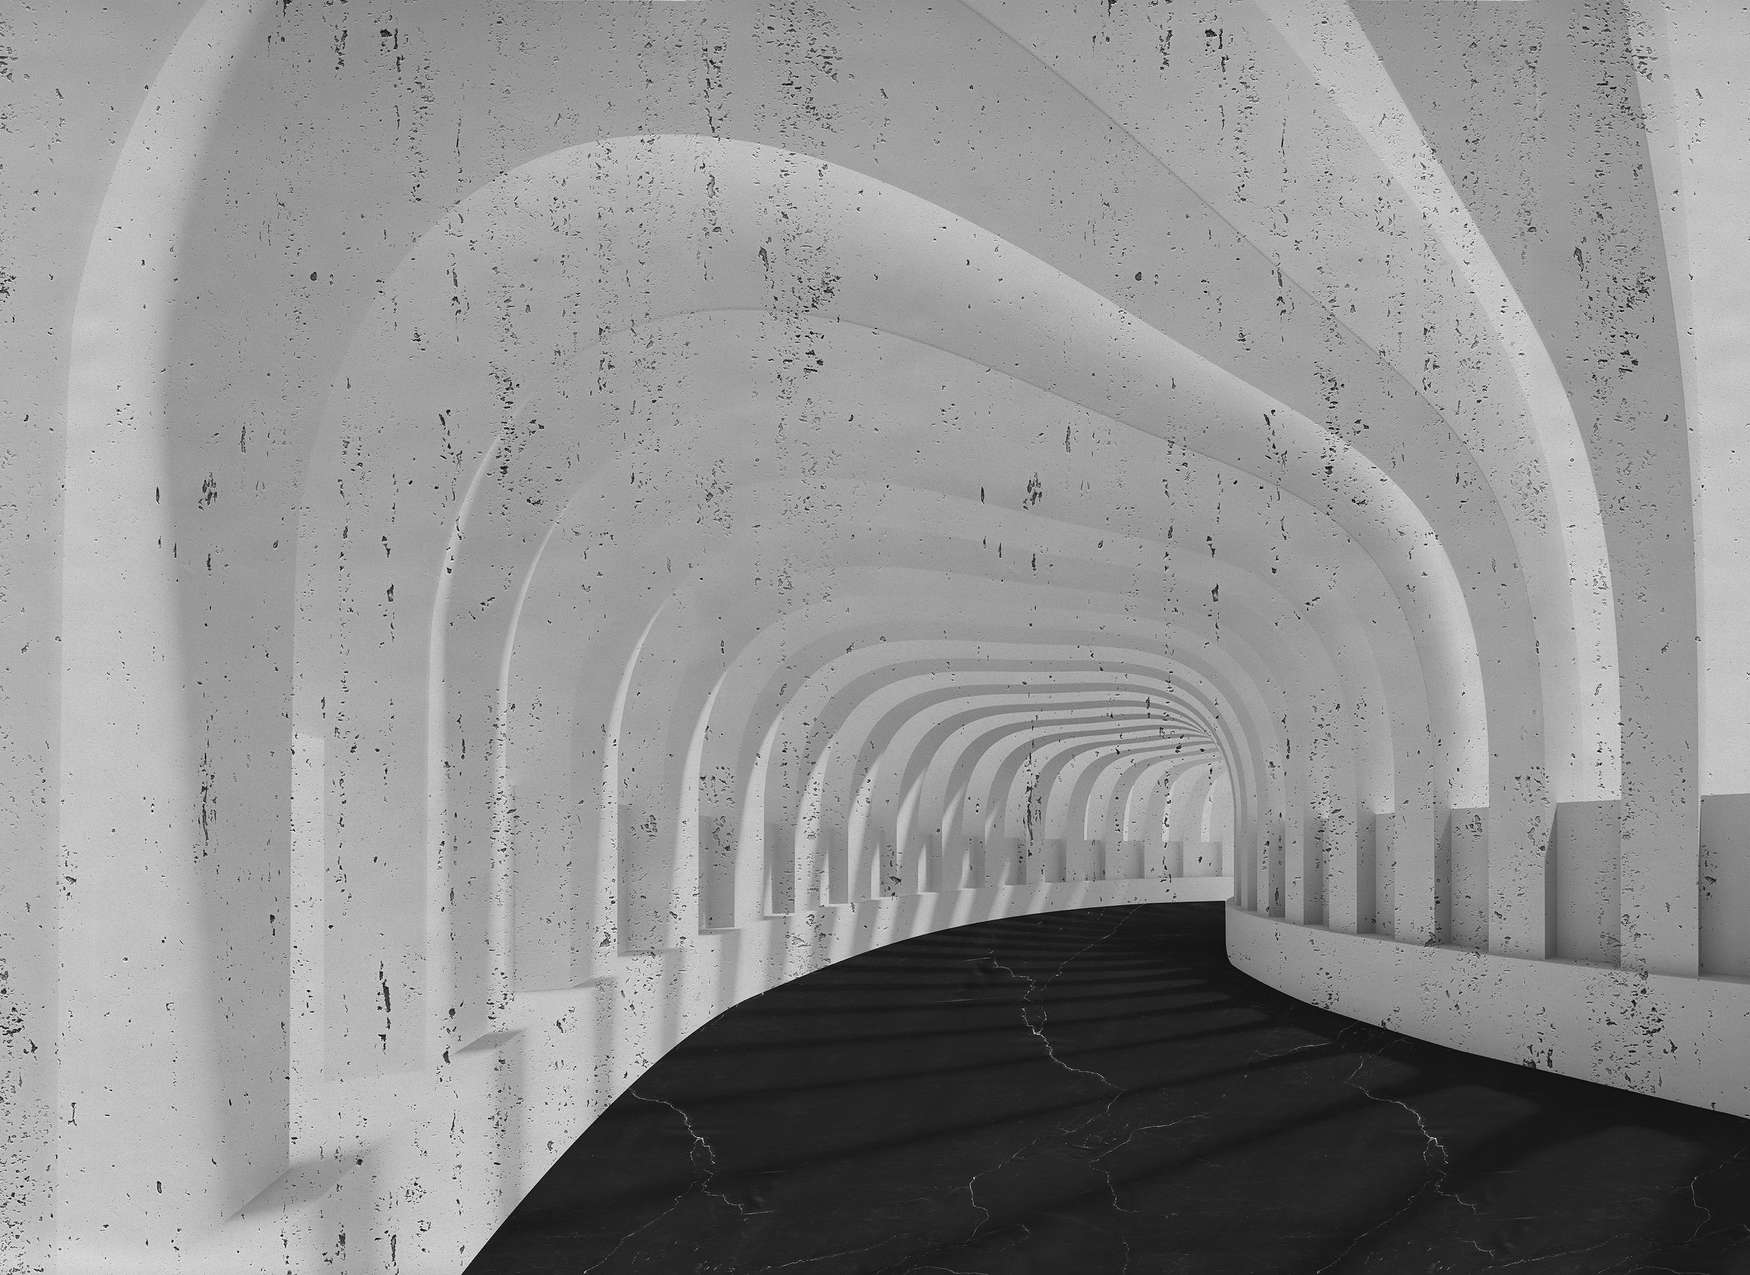             Digital behang 3D Betonnen tunnel met bogen - Grijs, Zwart
        